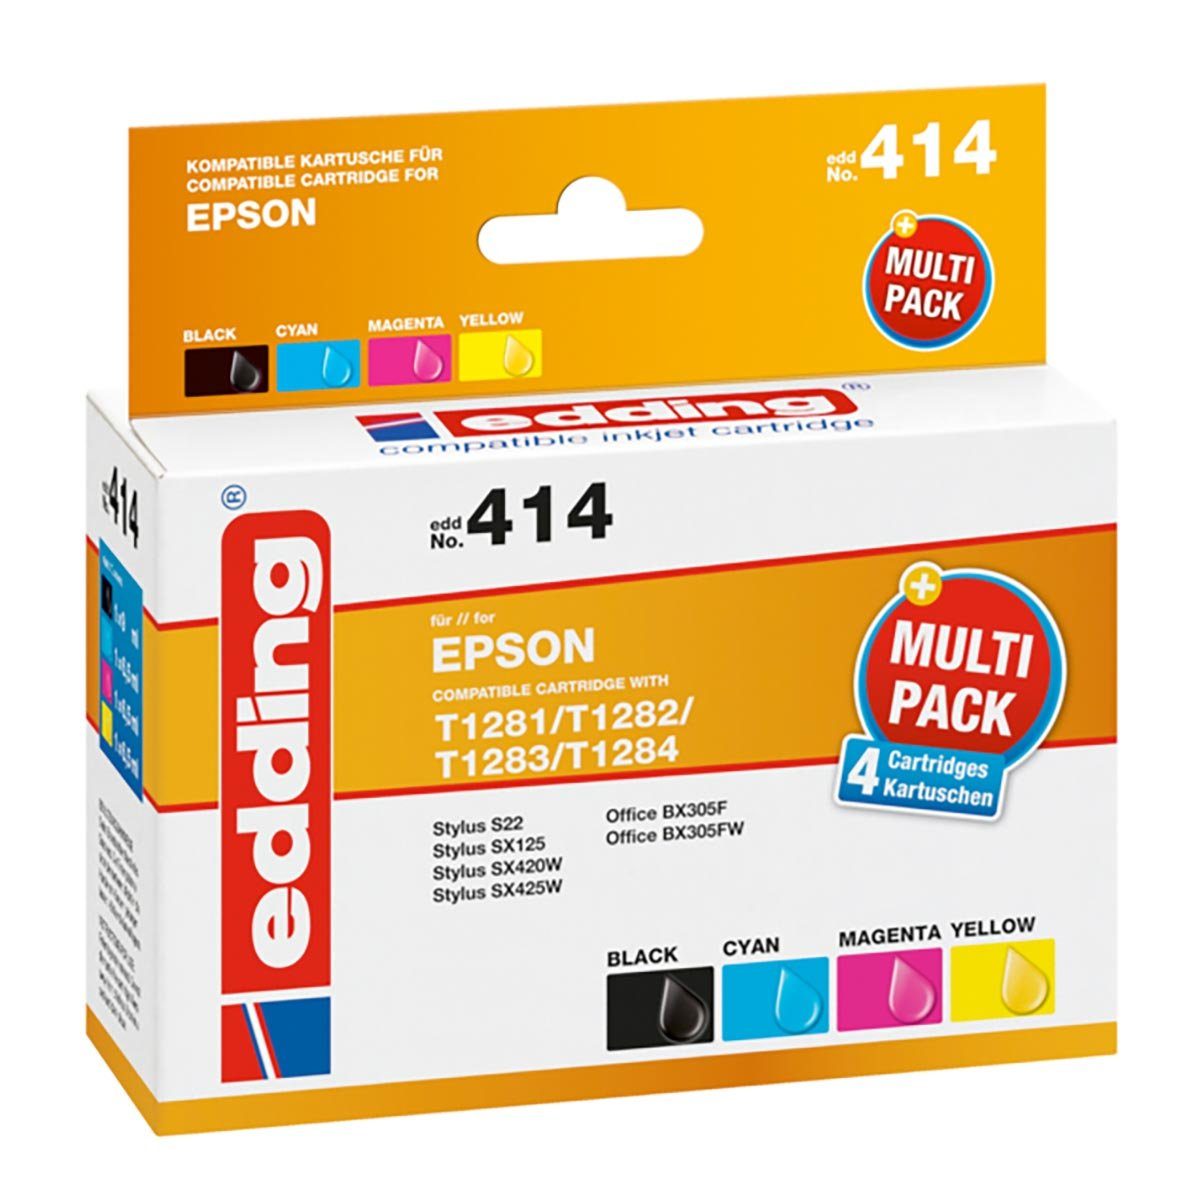 edding Edding Multipack edd No. 414 für Epson T1285 Tintenpatrone (kompatibel, mehrfarbig) | Tintenpatronen